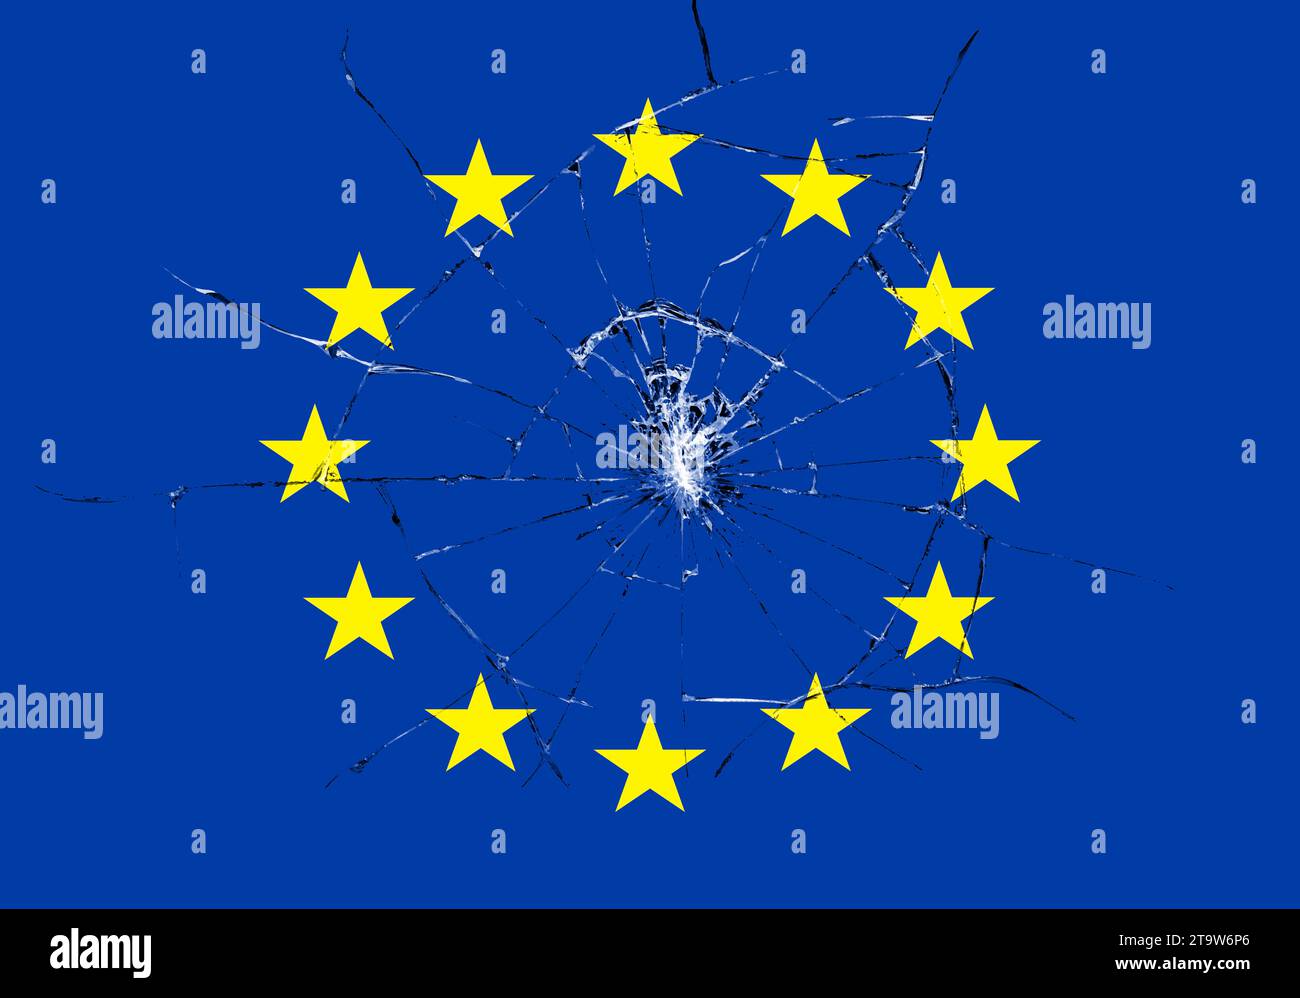 brexit, effetto vetro rotto sulla bandiera europea, crisi dell'eurozona schengen, fuga dal concetto di europa unita Foto Stock